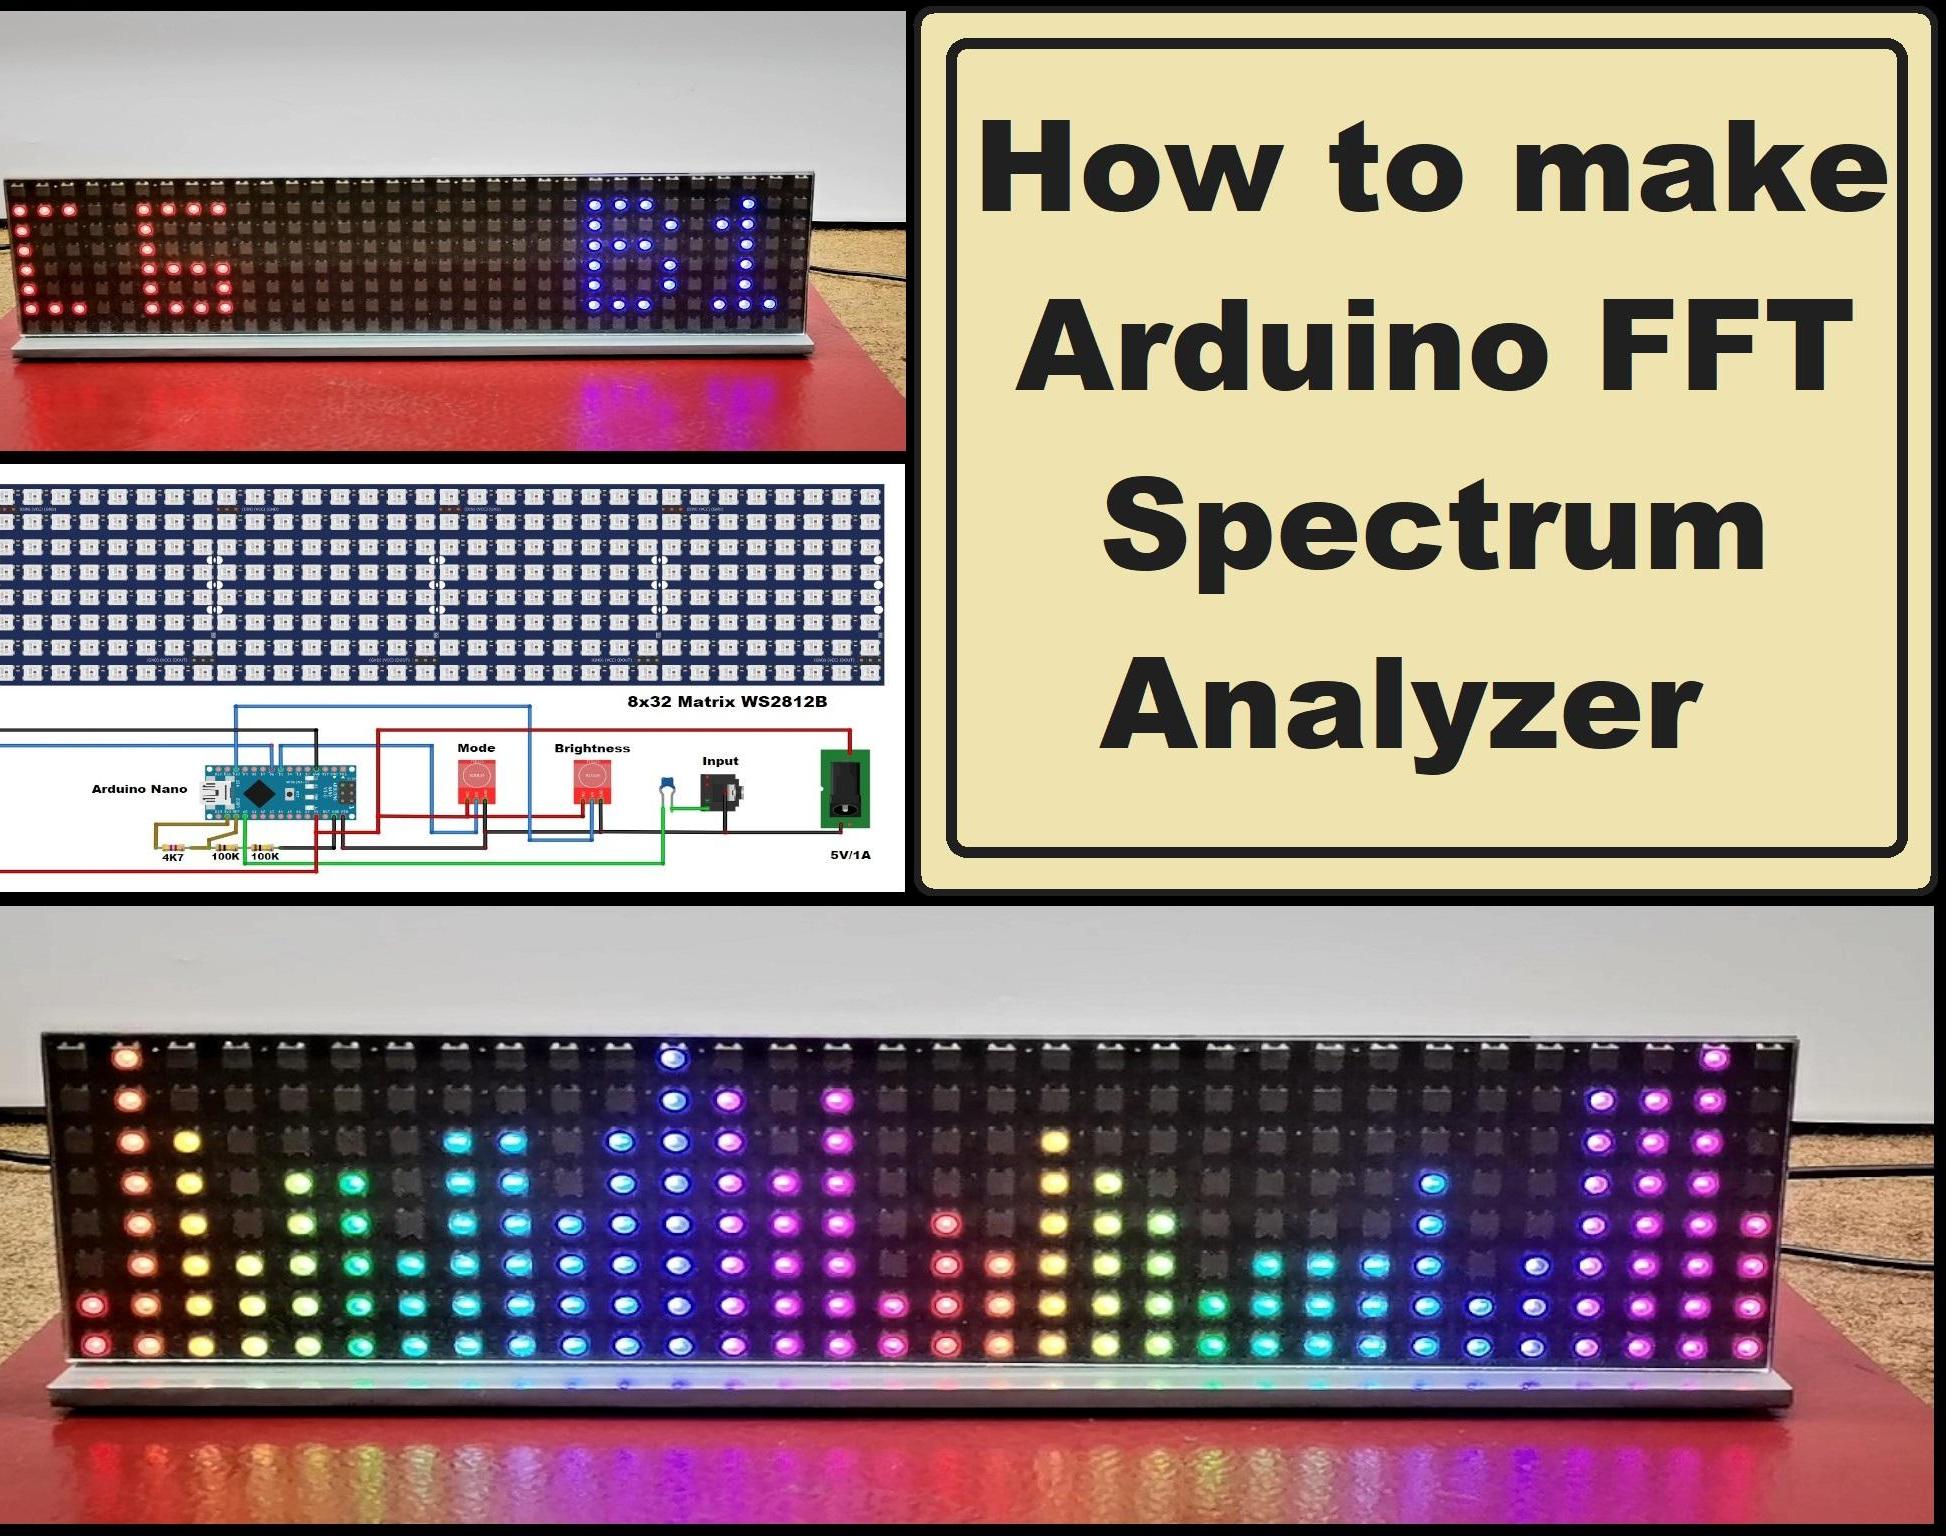 Arduino FFT Audio Spectrum Analyzer on 8x32 Color Matrix WS2812B